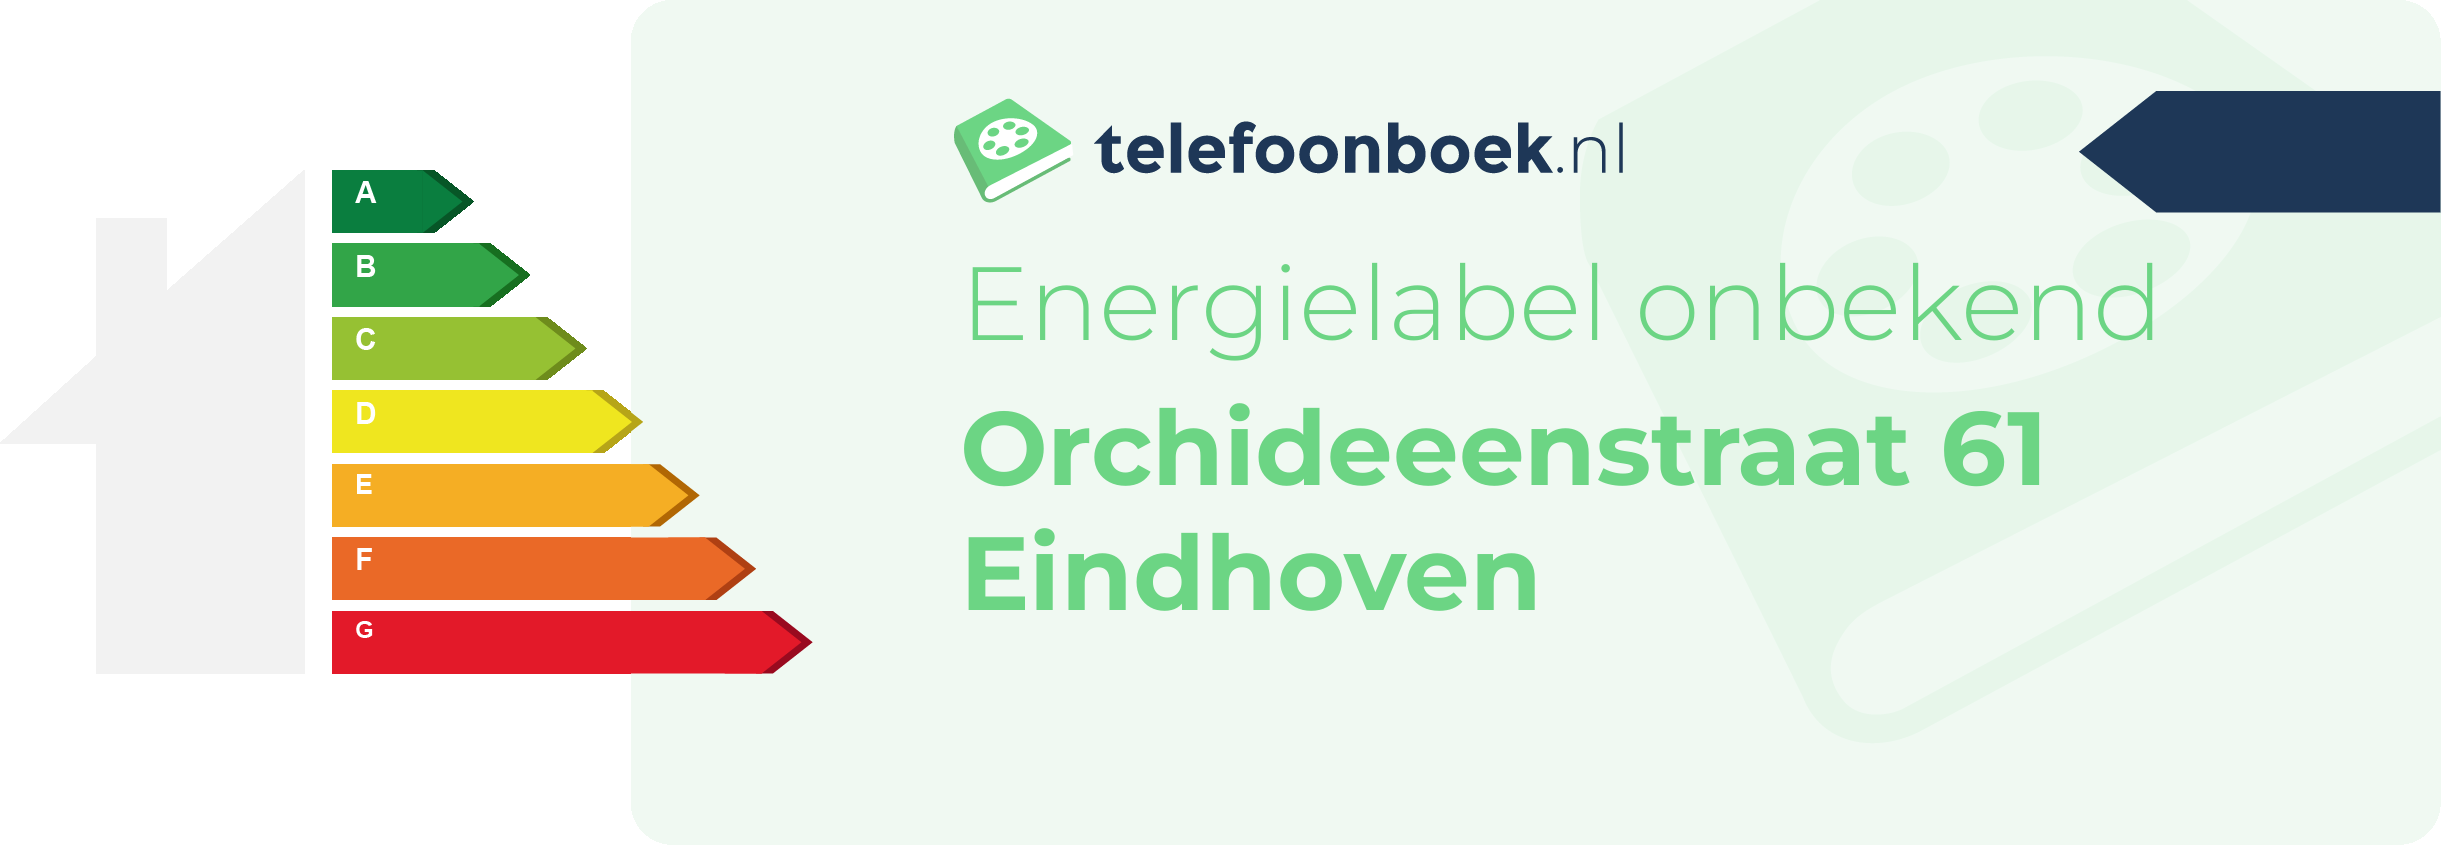 Energielabel Orchideeenstraat 61 Eindhoven